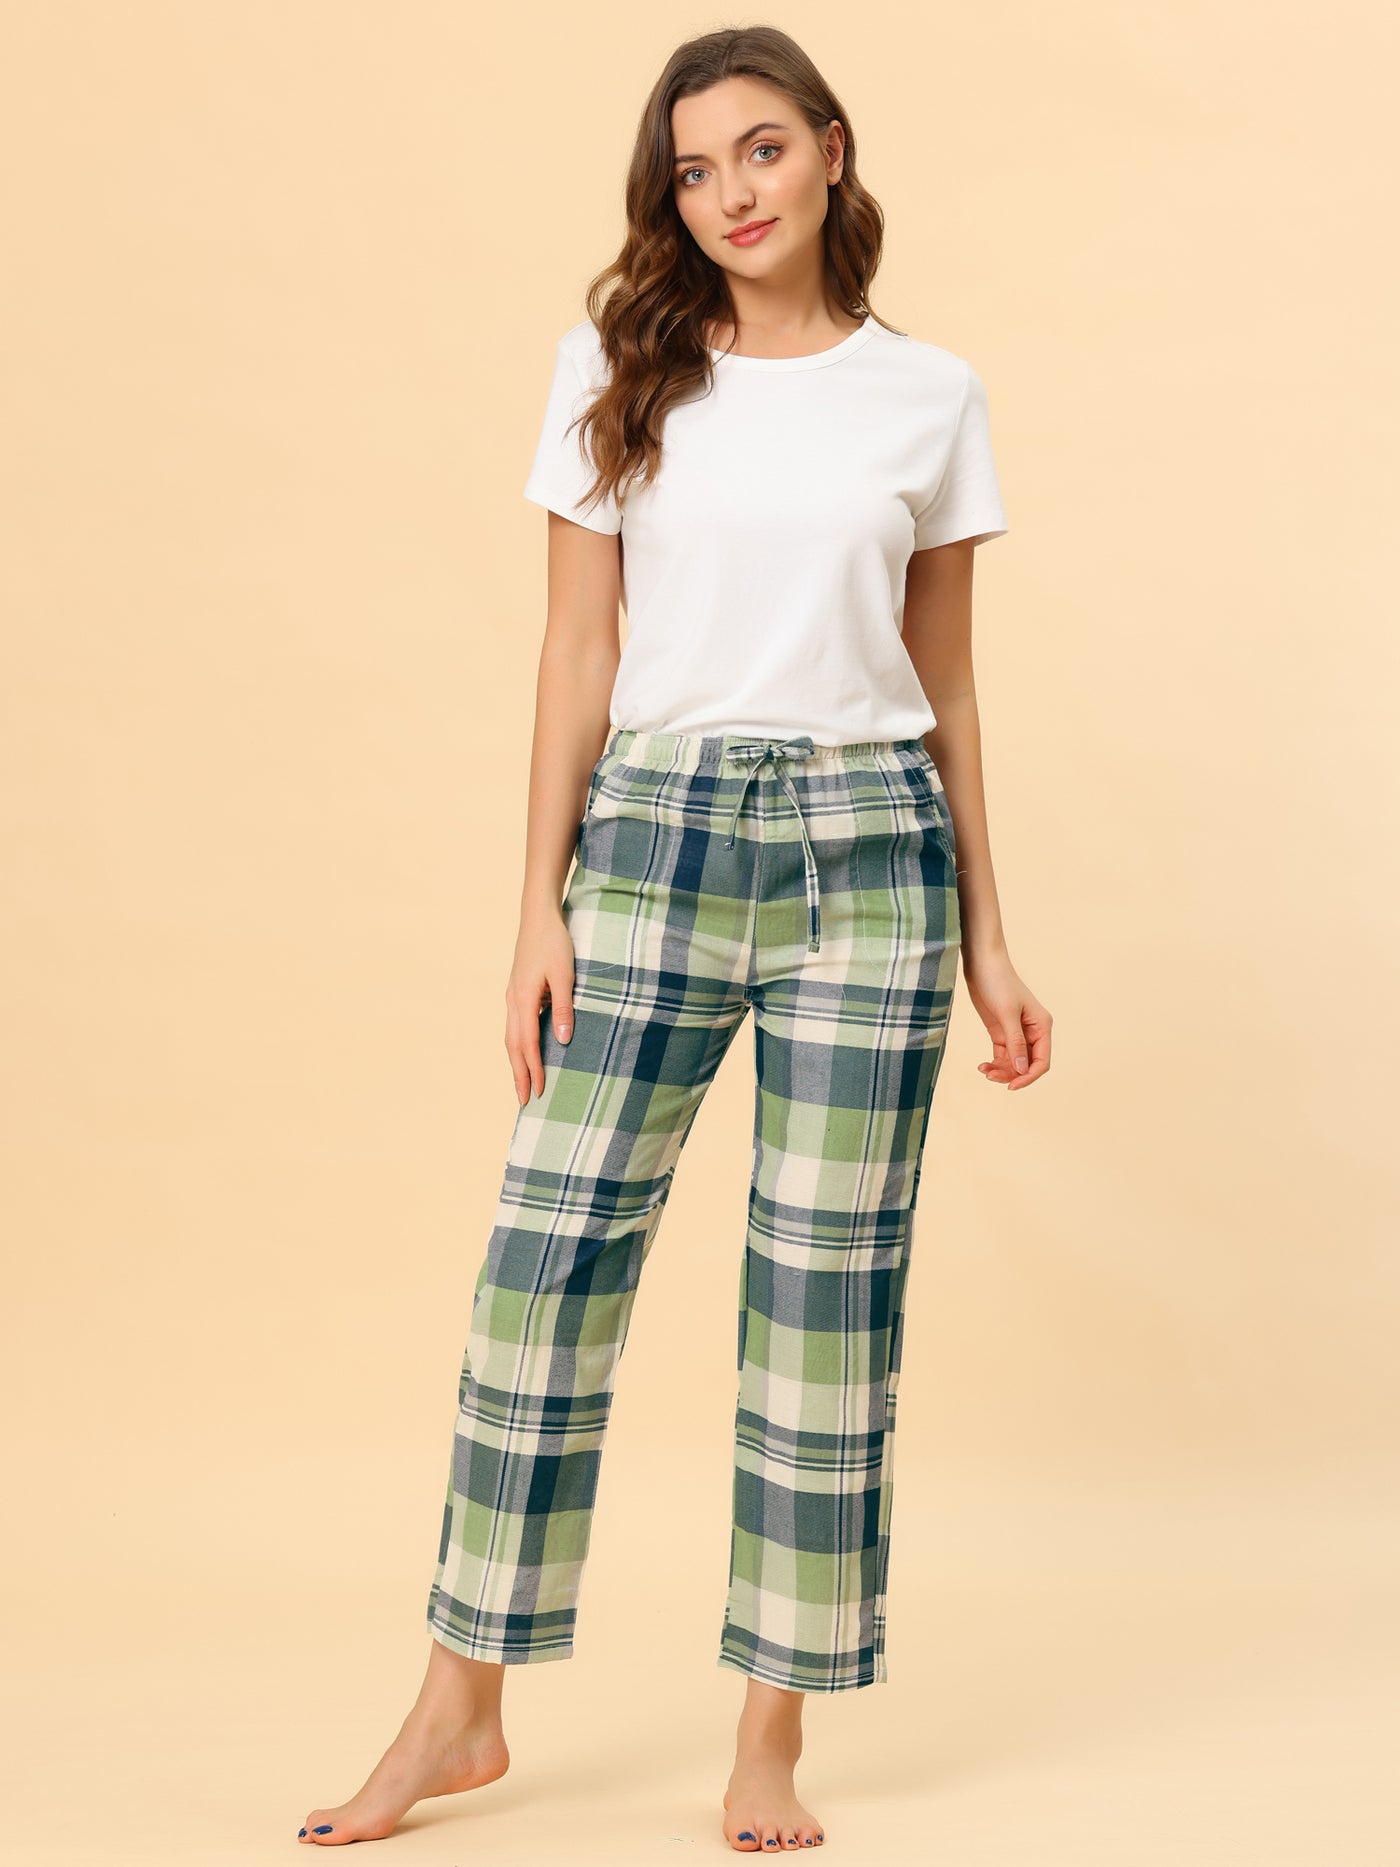 Allegra K Elastic Waist Pockets Sleepwear Plaid Pajamas Lounge Pants